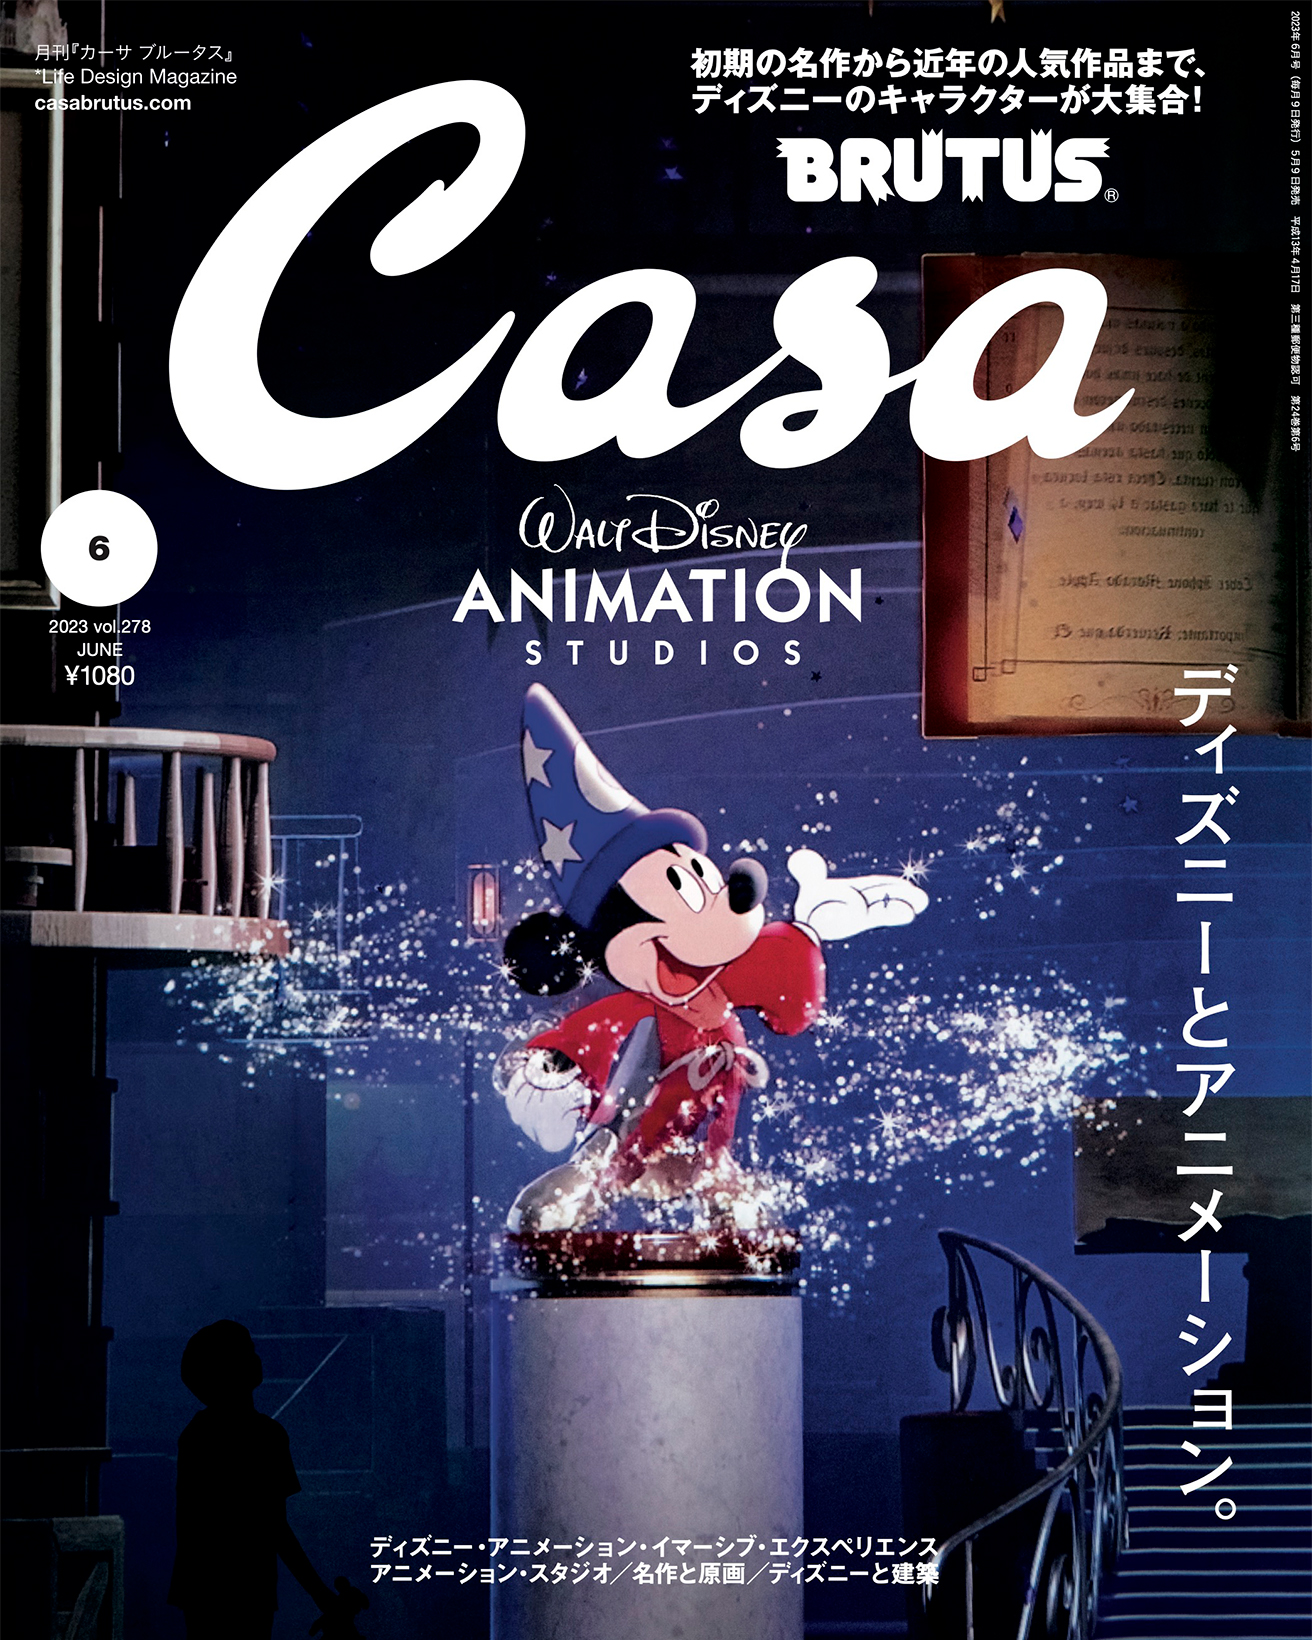 表紙は『ファンタジア』魔法使いの弟子のミッキーマウス！ 5月9日発売号『ディズニーとアニメーション。』 | カーサ ブルータス Casa BRUTUS